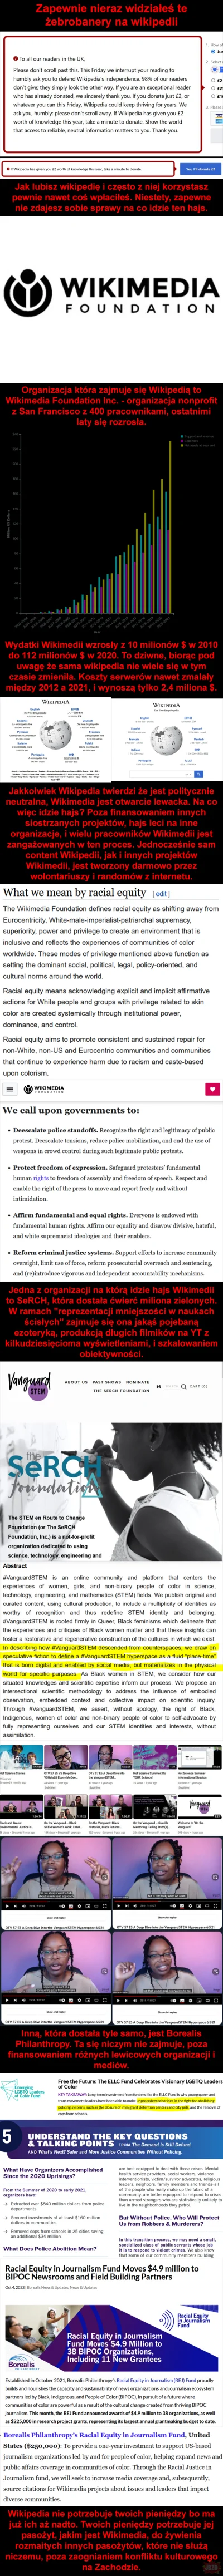 dire - #jbzd
#polityka
#wikipedia
#4konserwy